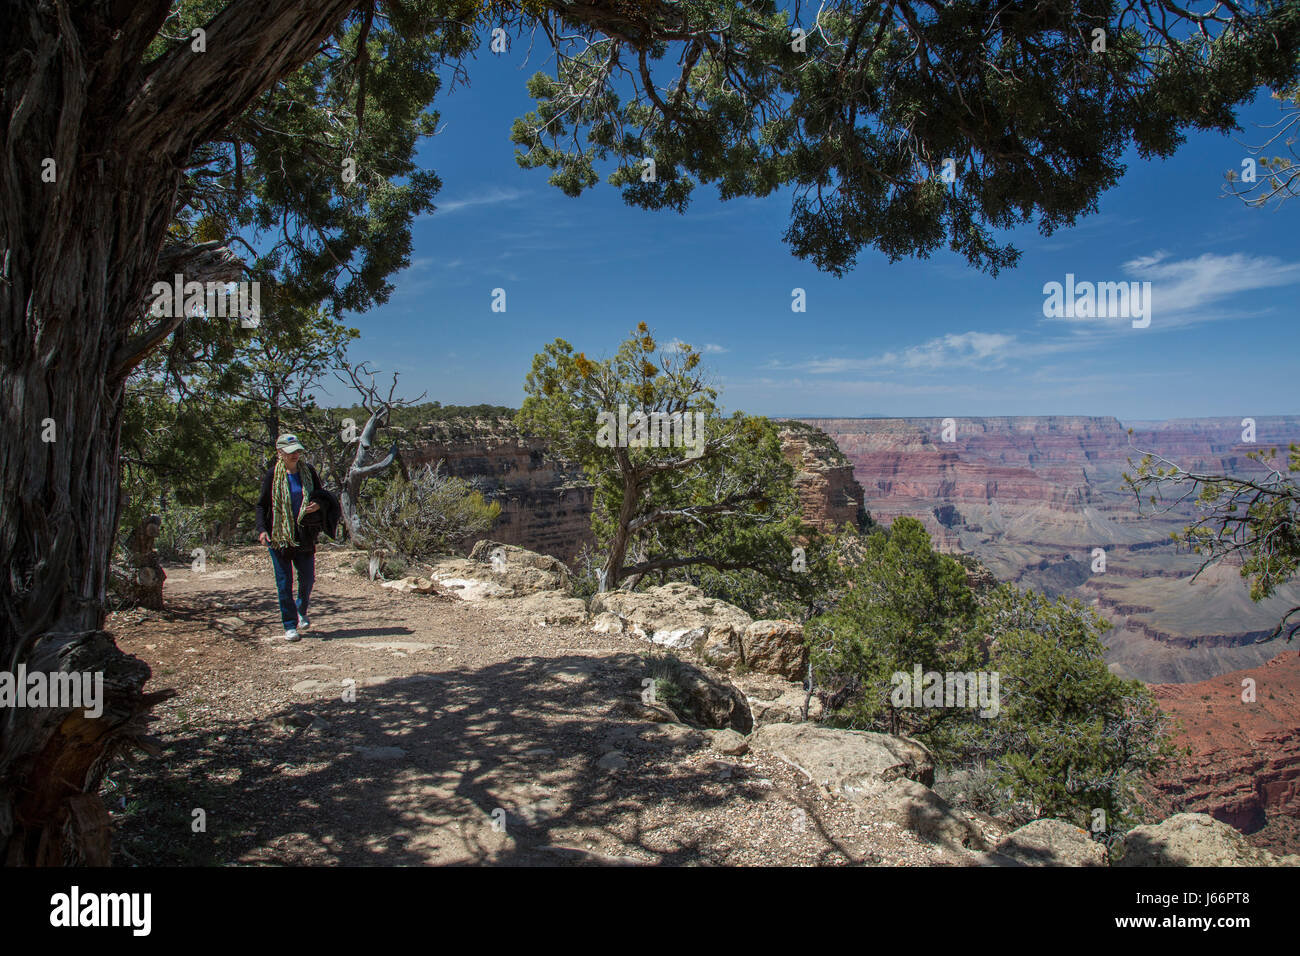 Parco Nazionale del Grand Canyon, Arizona - un escursionista sul Rim Trail lungo il bordo sud del Grand Canyon. Foto Stock